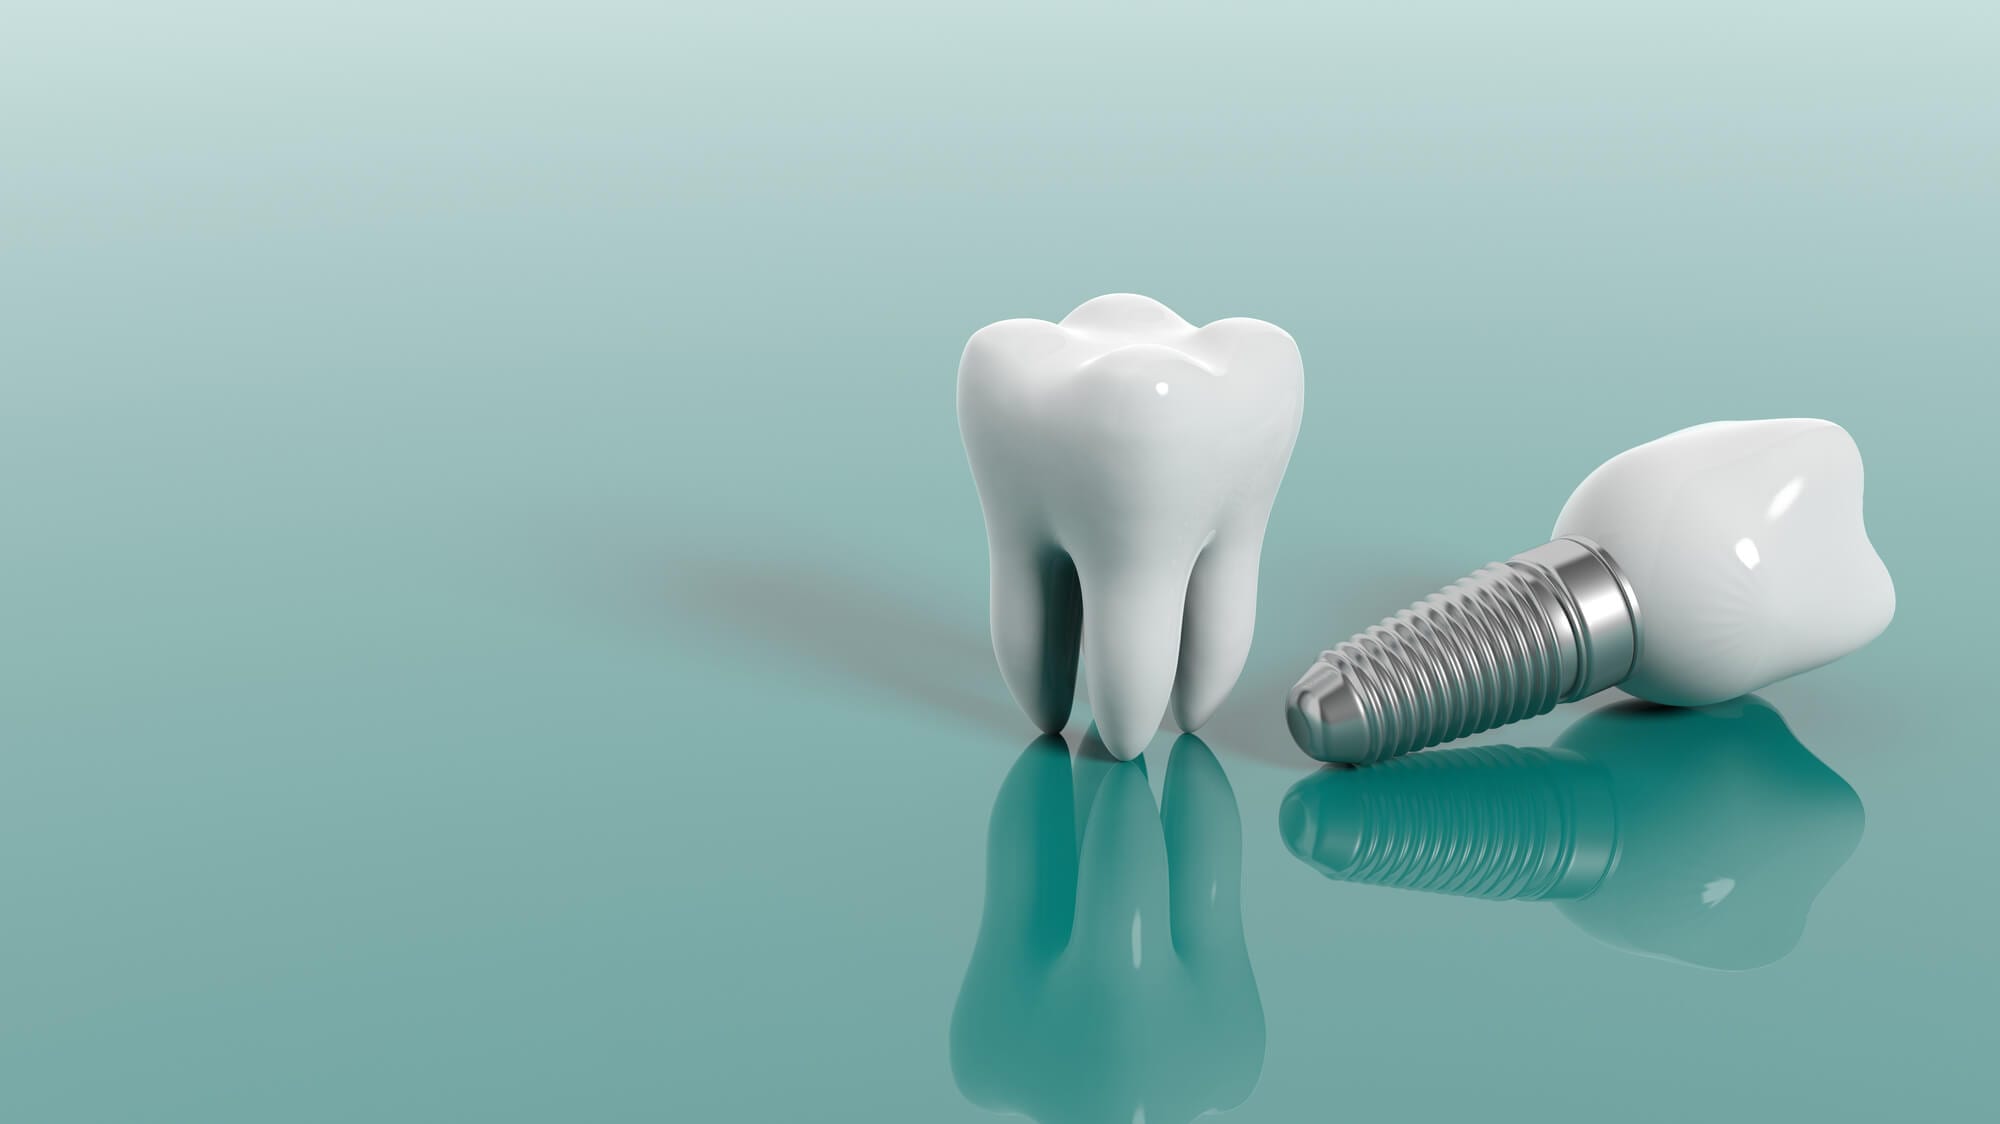 ما هي العوامل التي تؤثر على تكلفة زراعة الأسنان؟